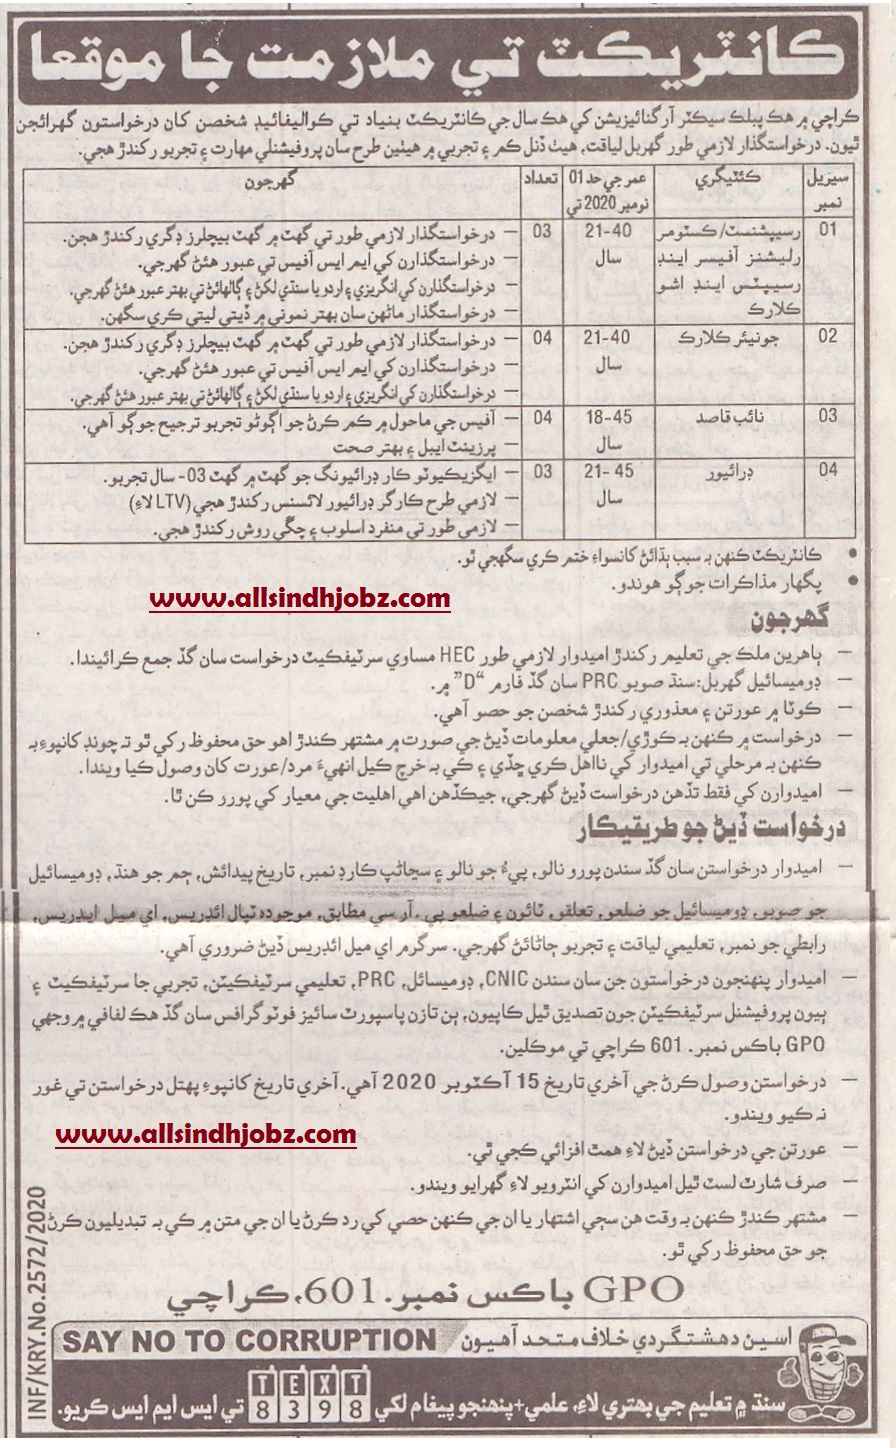 Public Sector Organization Jobs 2020 | P O Box No 601 GPO Karachi